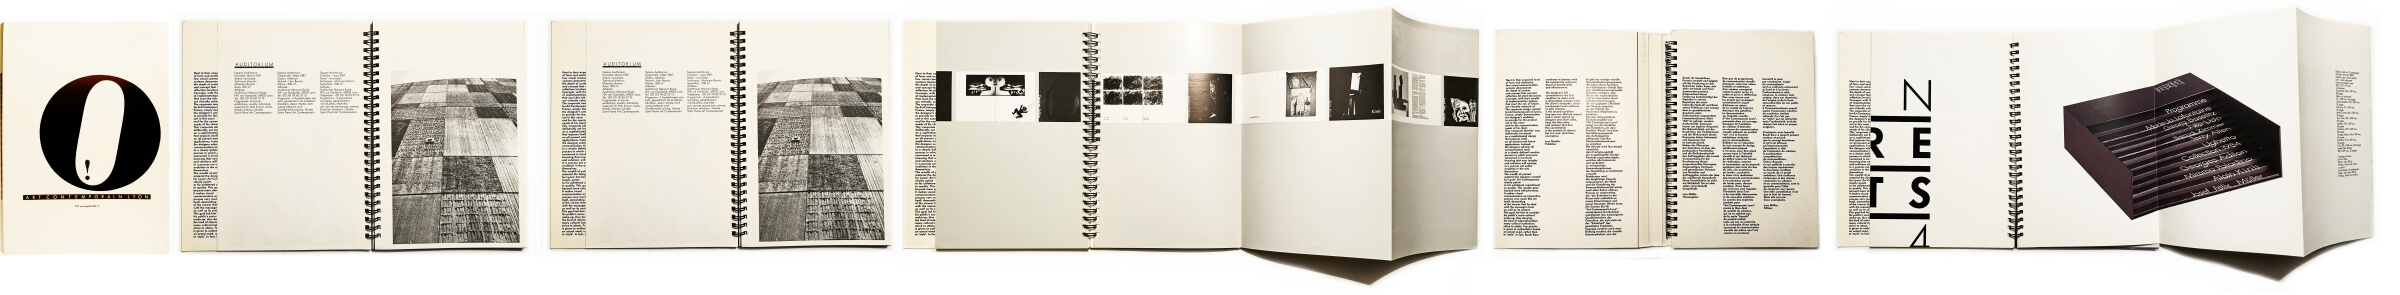 ruedi-publikation_0015_art-contemporary